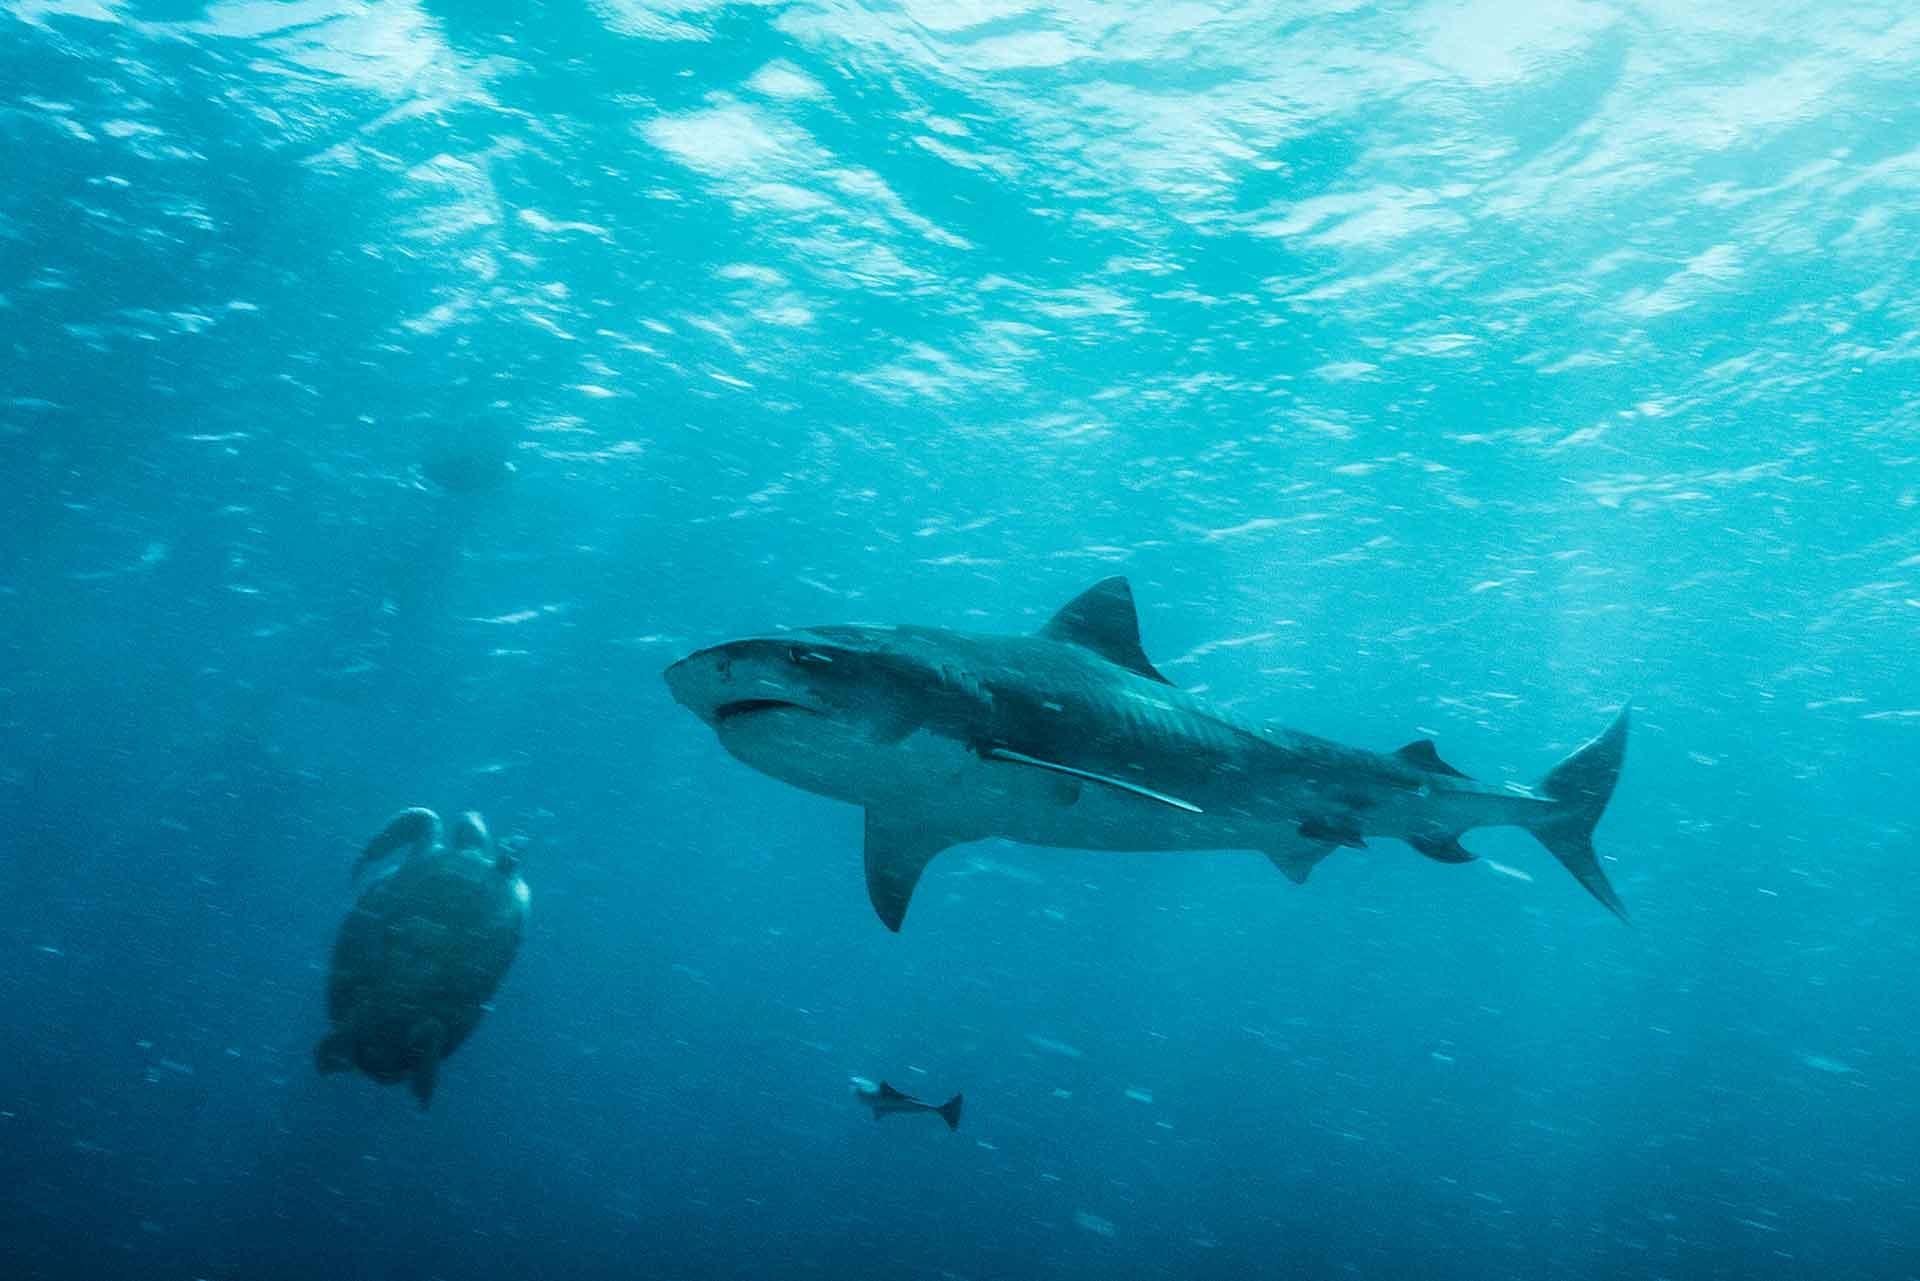 A shark underwater.